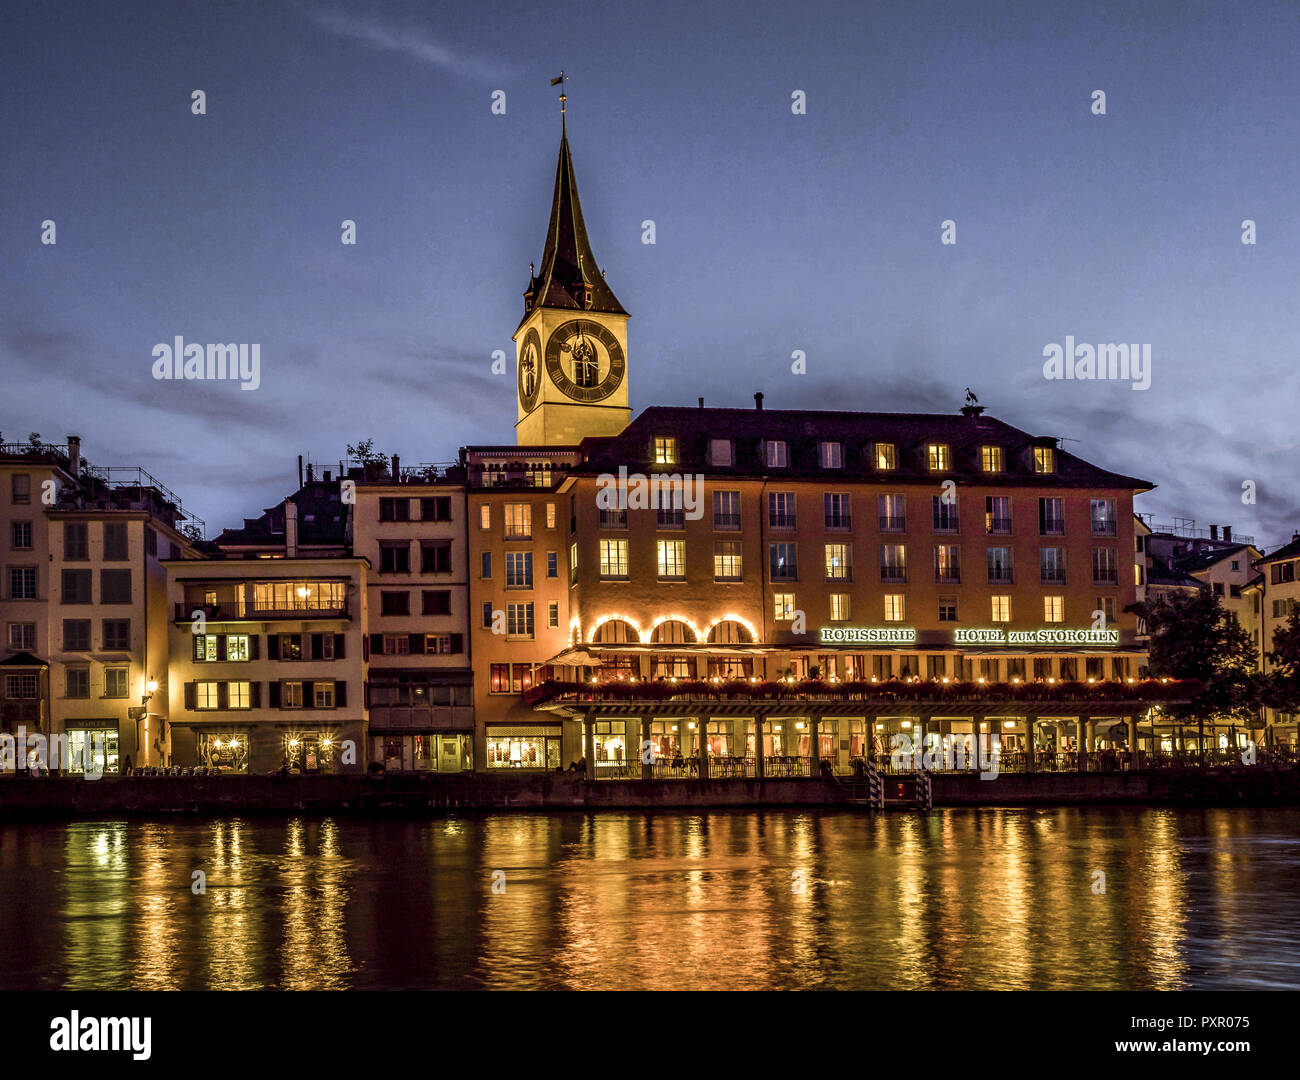 St. Peters Church and Hotel zum Storchen in Zurich at night, Switzerland, Europe. Stock Photo